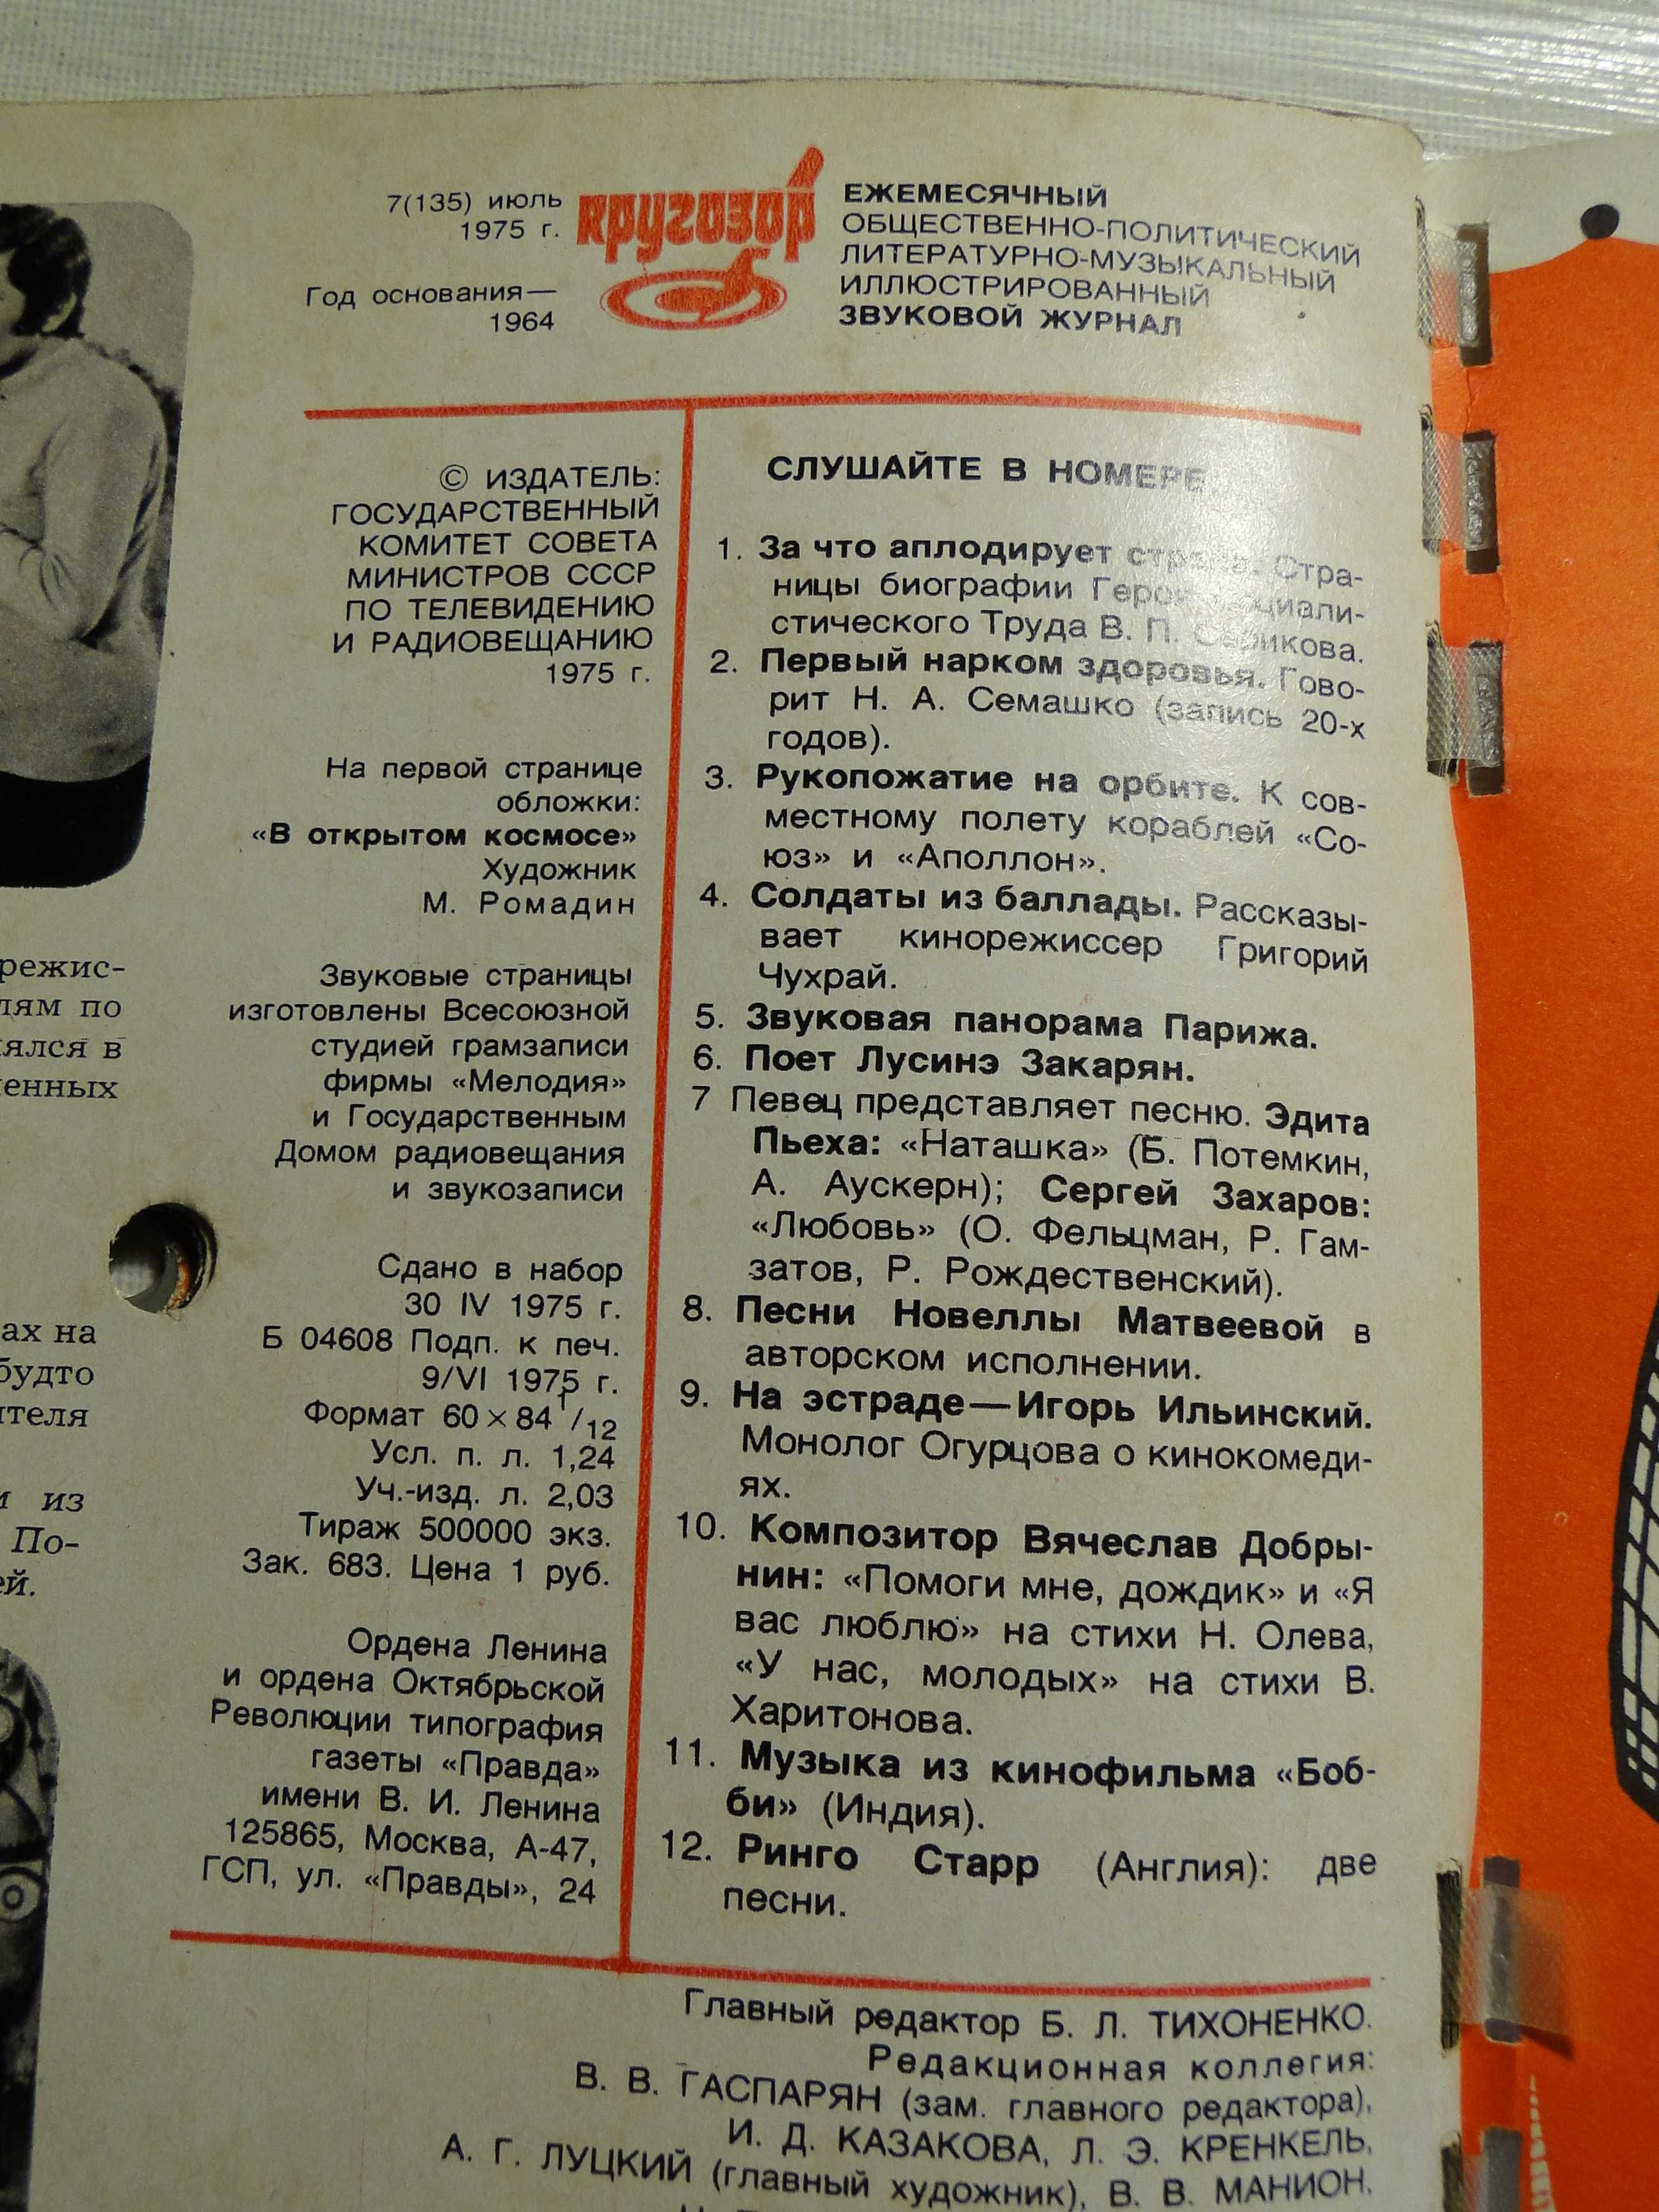 Журнал Кругозор с пластинками 1975 г.